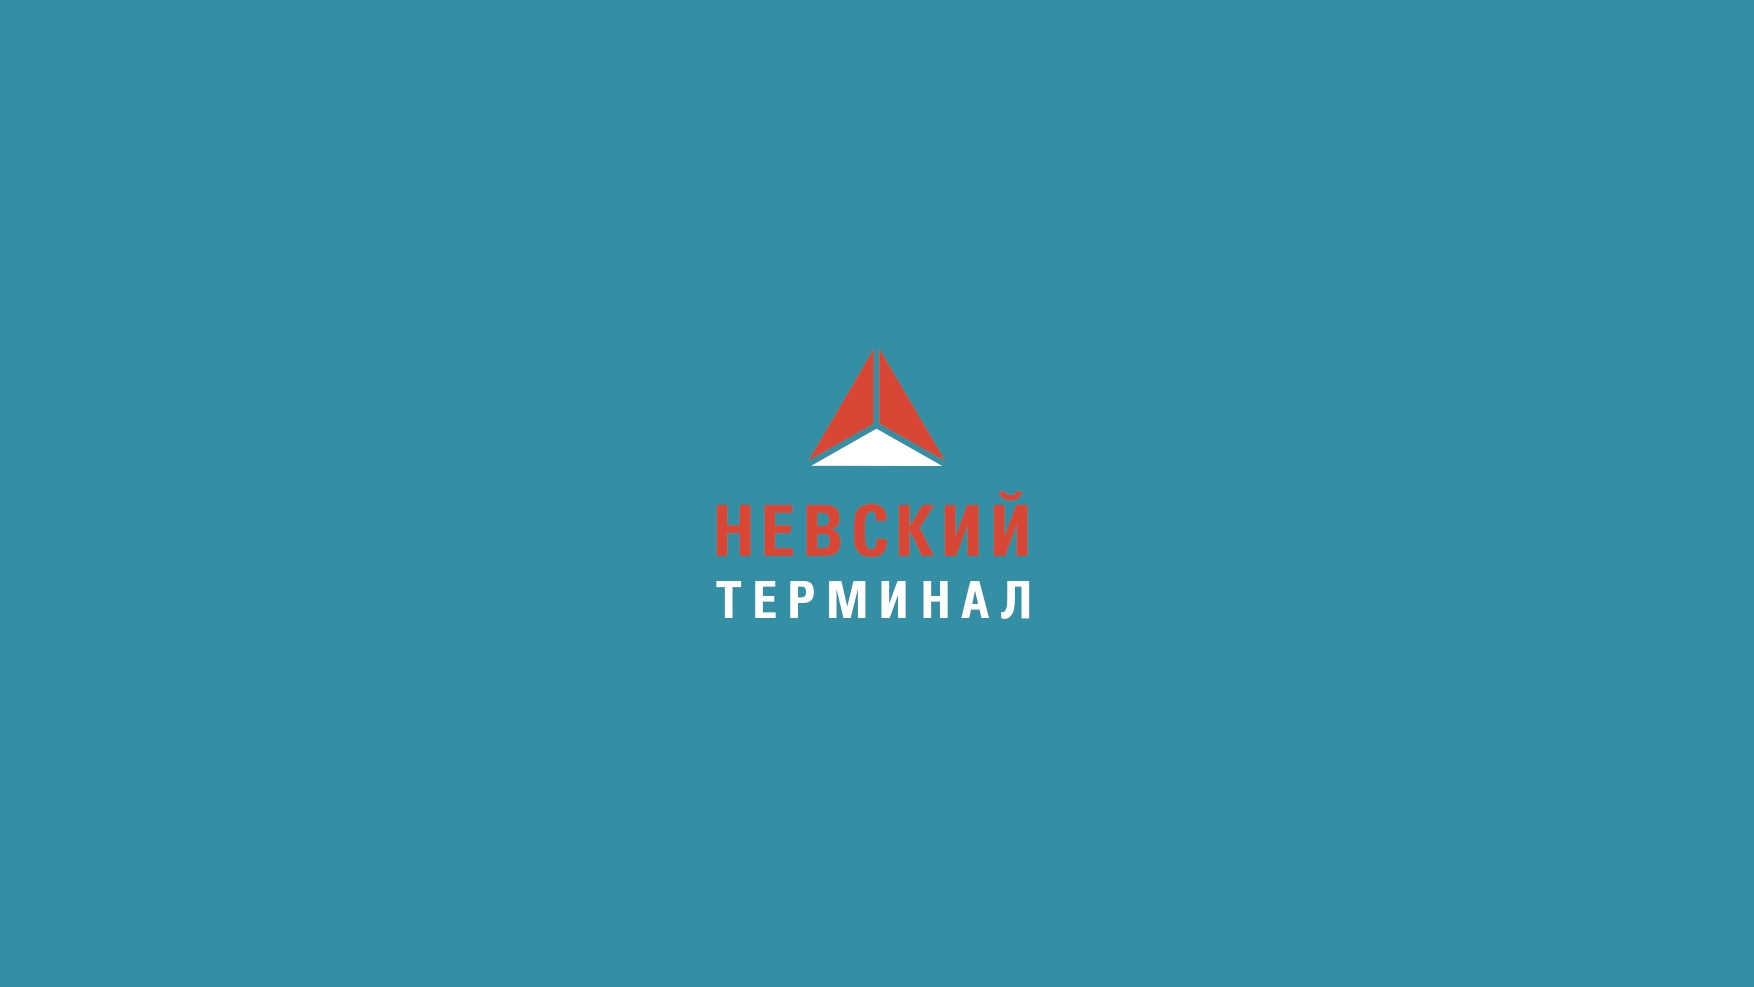 Презентация ООО "Невский терминал"